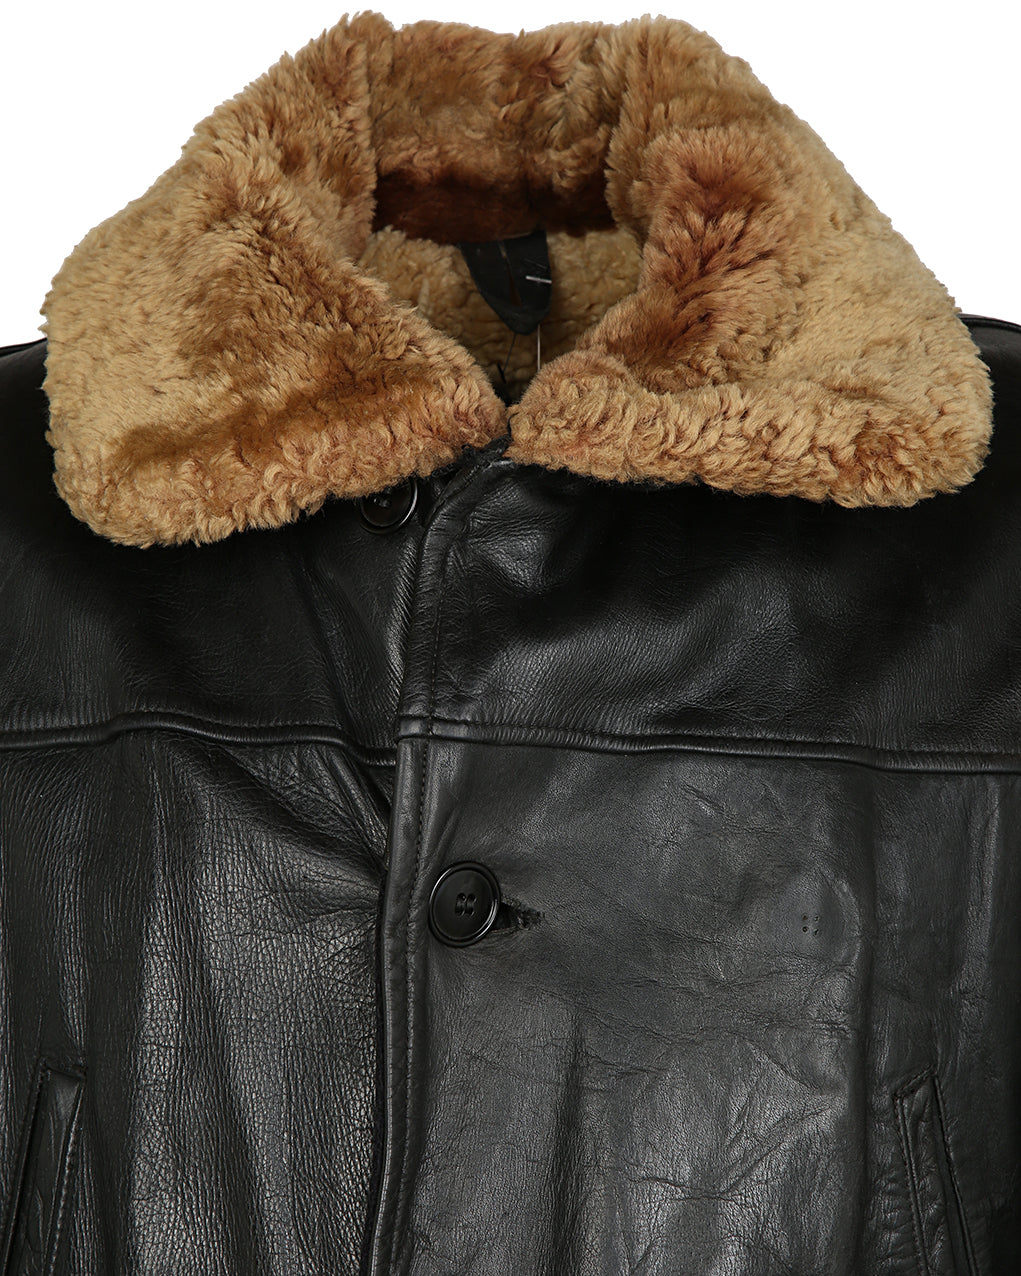 Vintage 50s S&S Sportswear Barnstormer Leather  Jacket - L